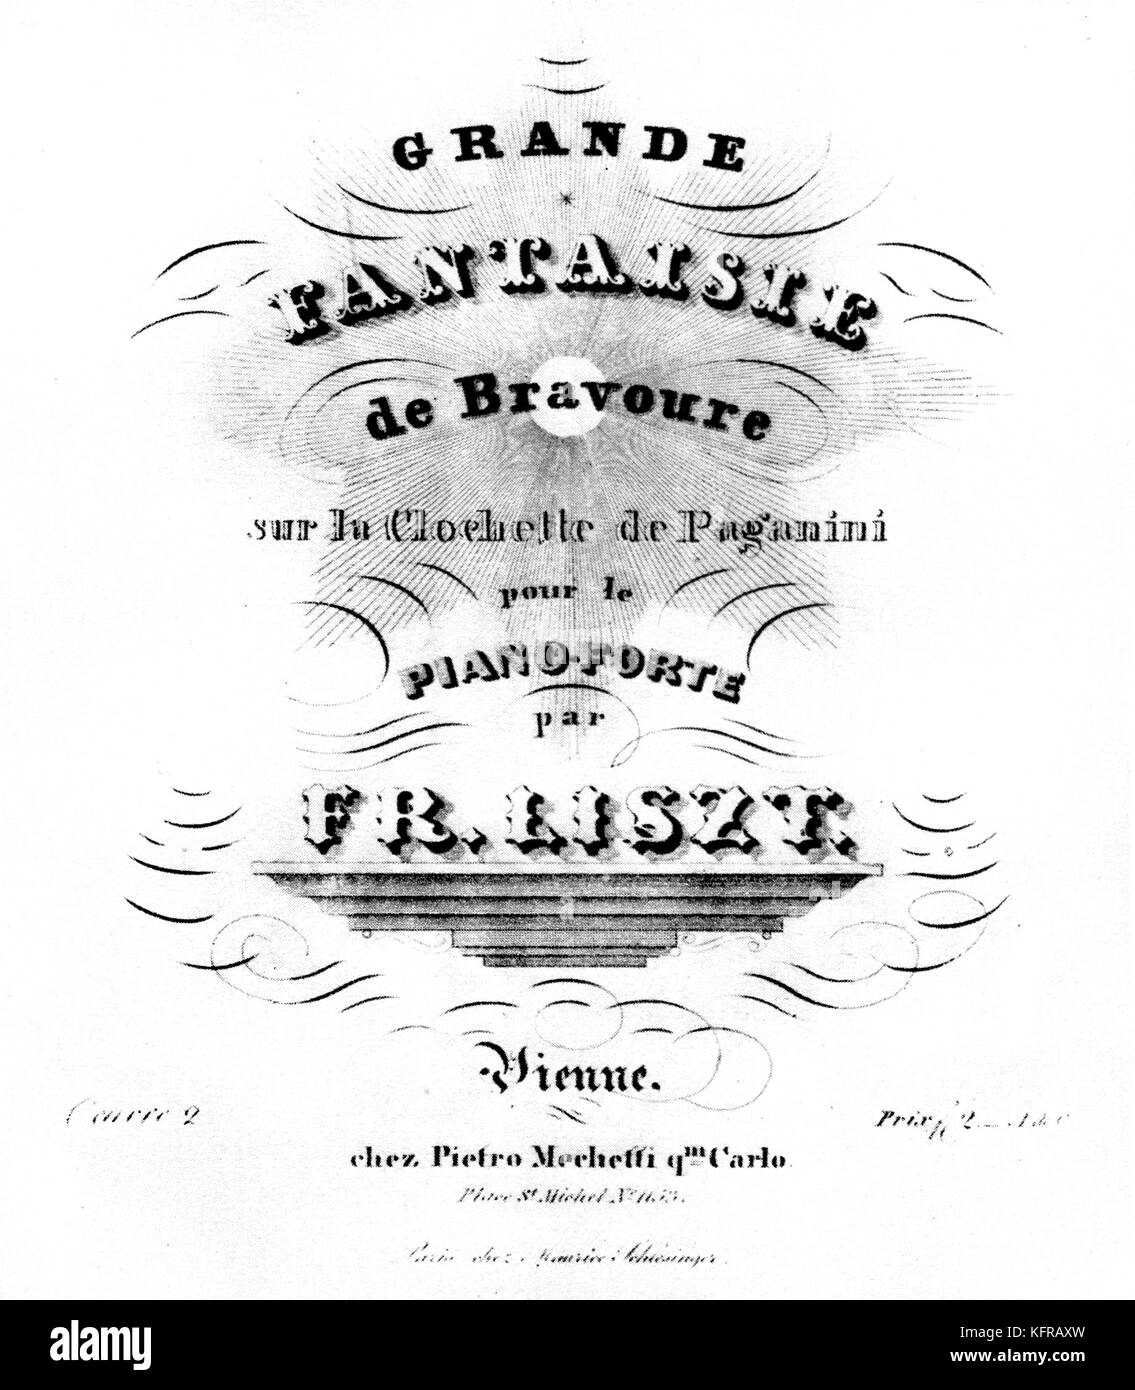 La Fantaisie sur la Clochette de Paganini por Liszt - frontispicio de la partitura musical. Opus 2, compuesta en 1832. FL: pianista y compositor húngaro, el 22 de octubre de 1811 - 31 de julio de 1886. Foto de stock